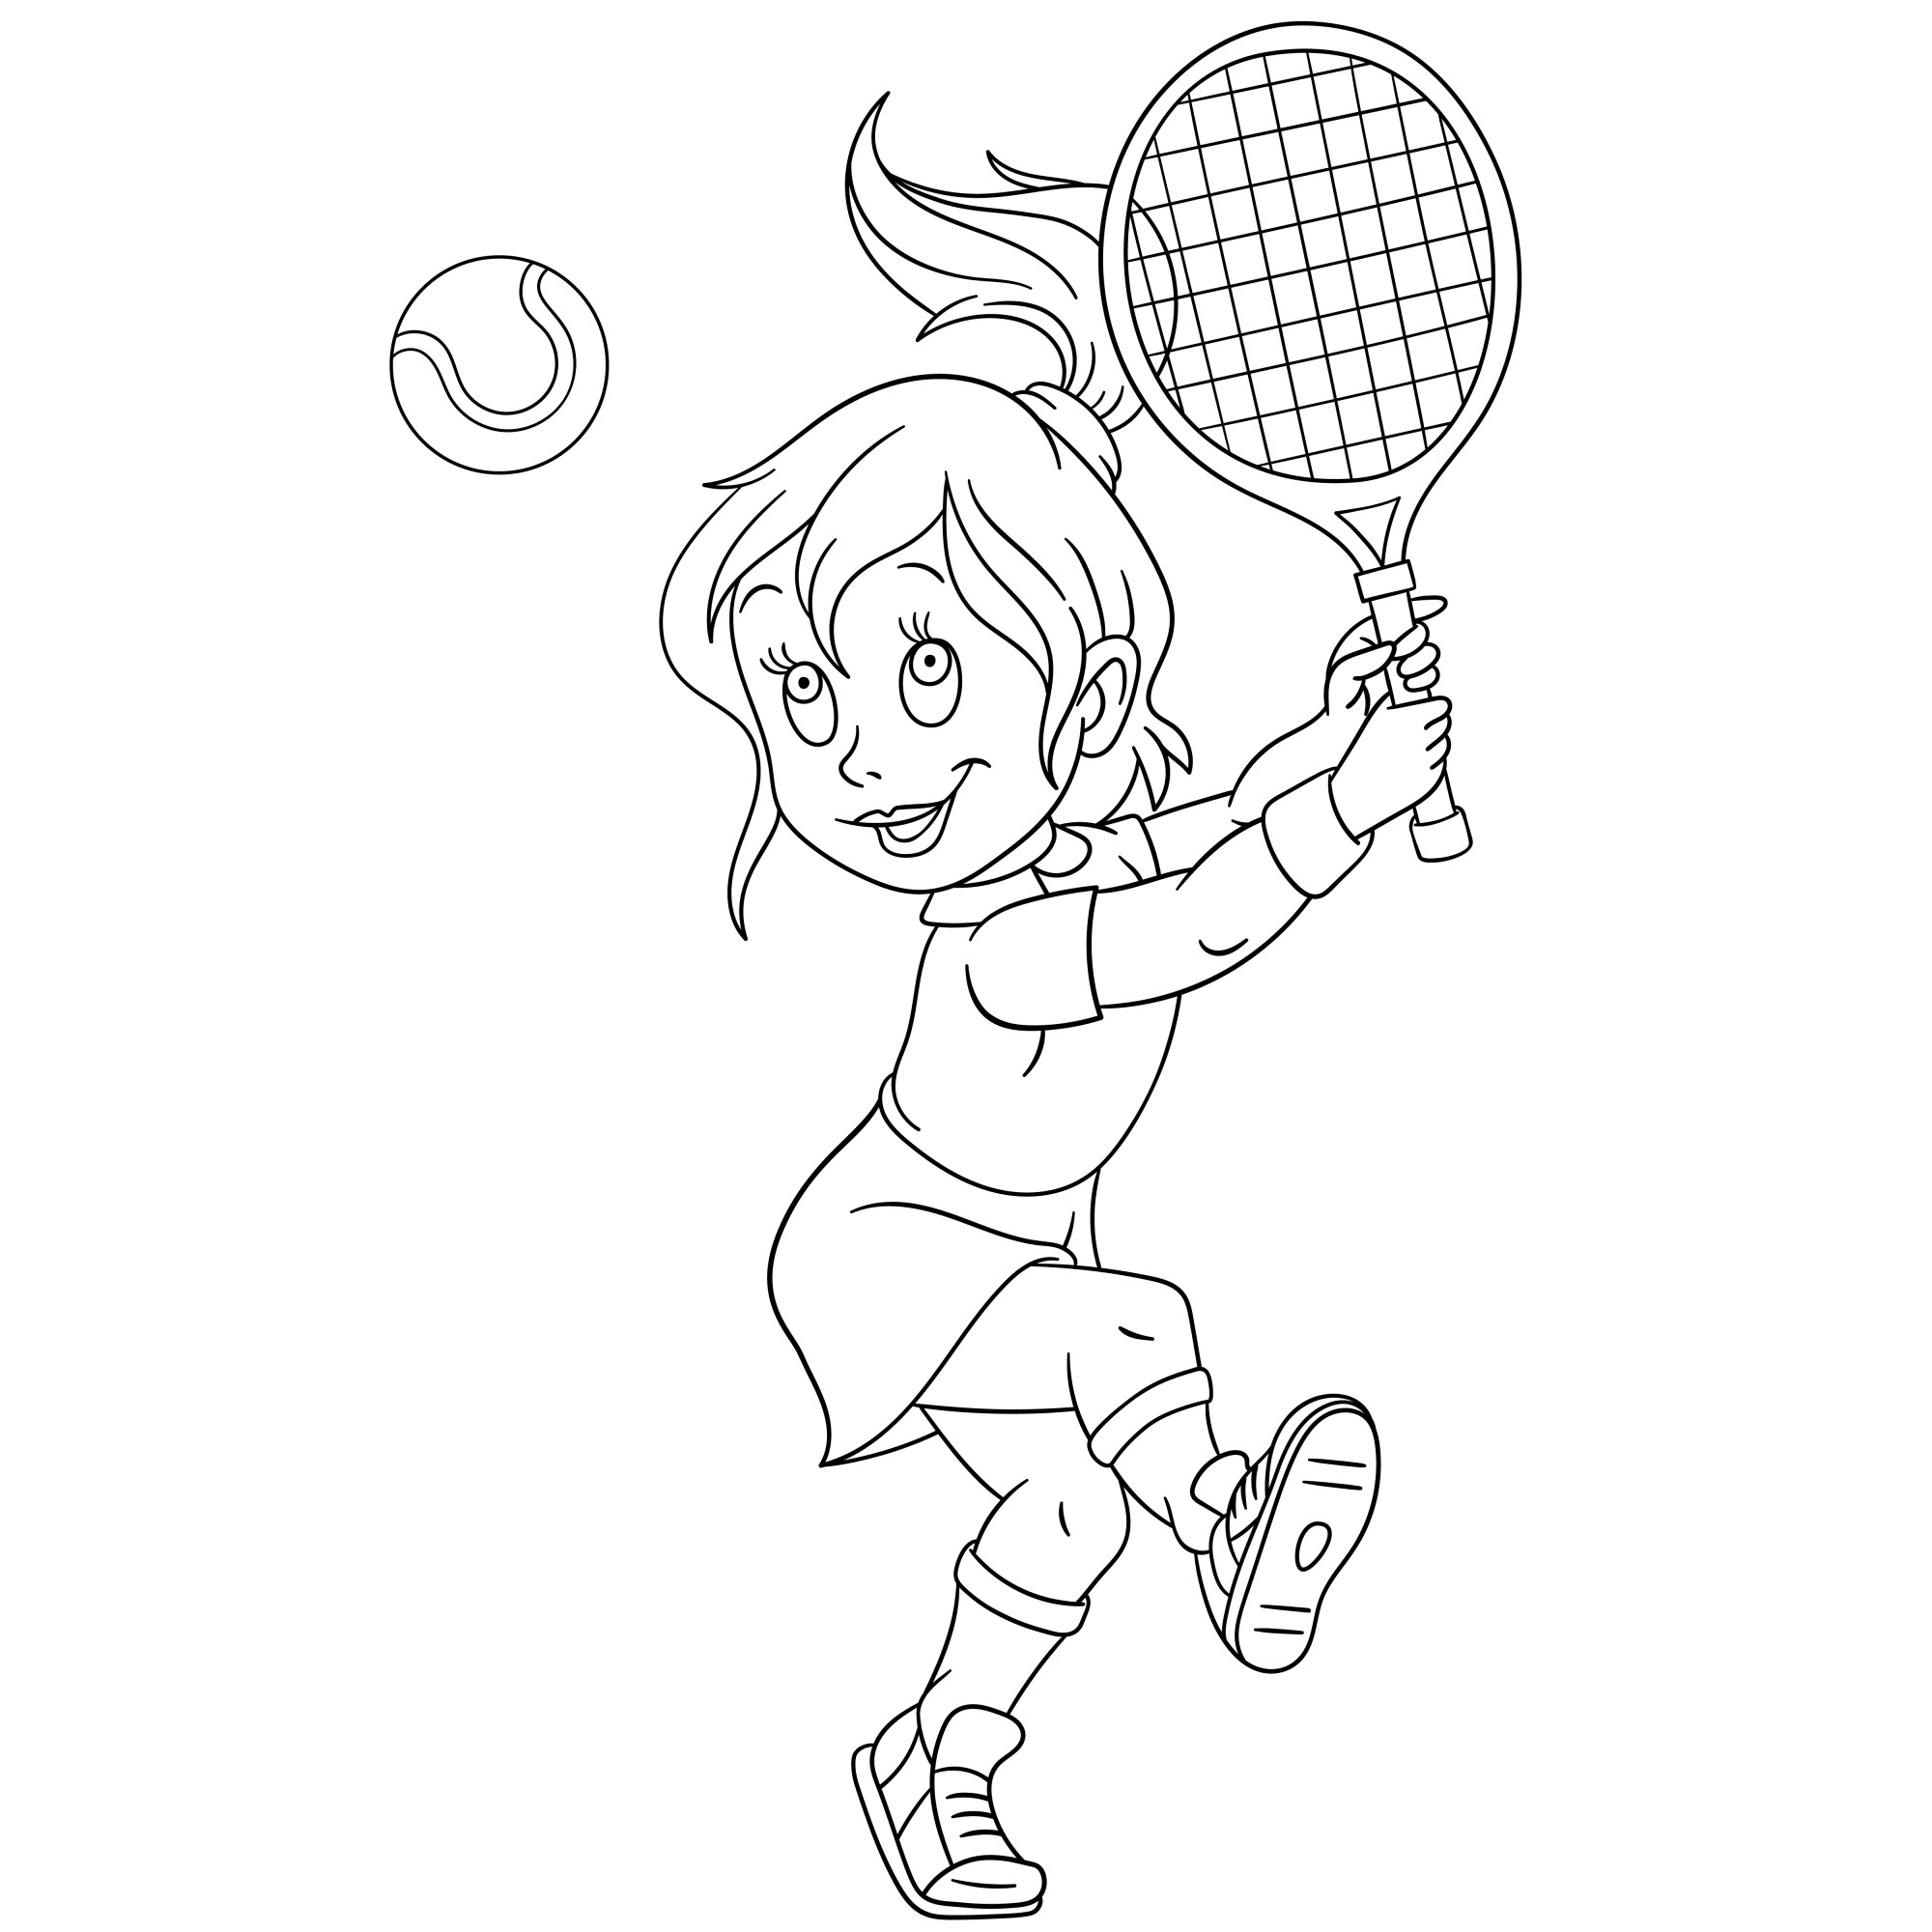 Раскраска для детей: милая девочка с ракеткой играет в теннис